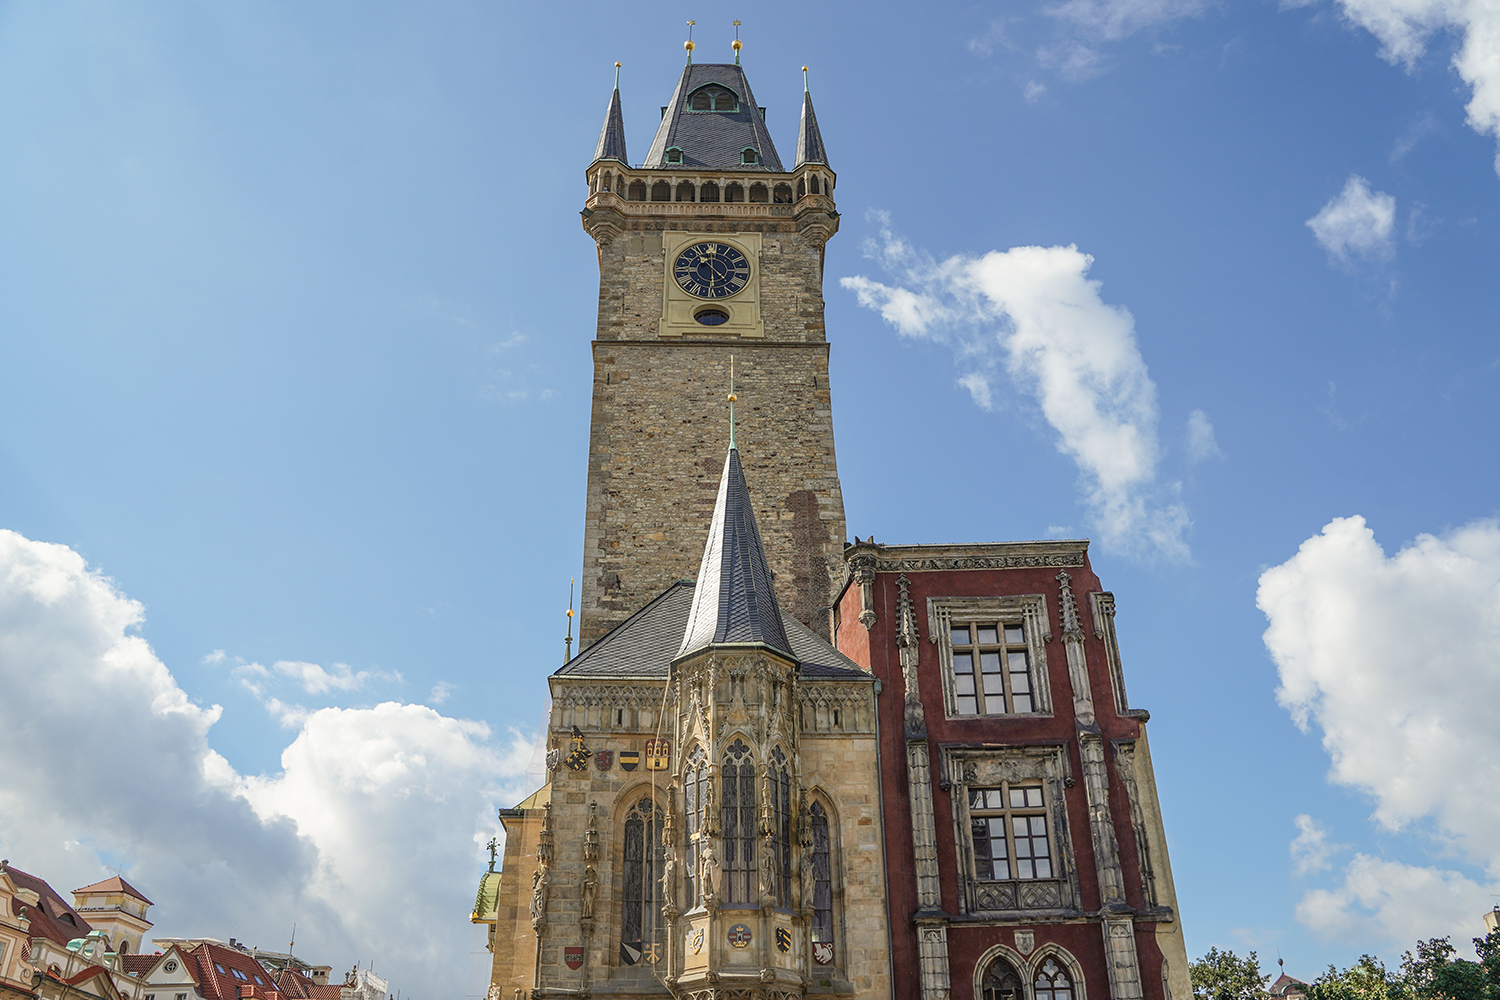 旧市庁舎は人気観光スポットのひとつ。15世紀に造られた機械仕掛けの天文時計が設置されている。